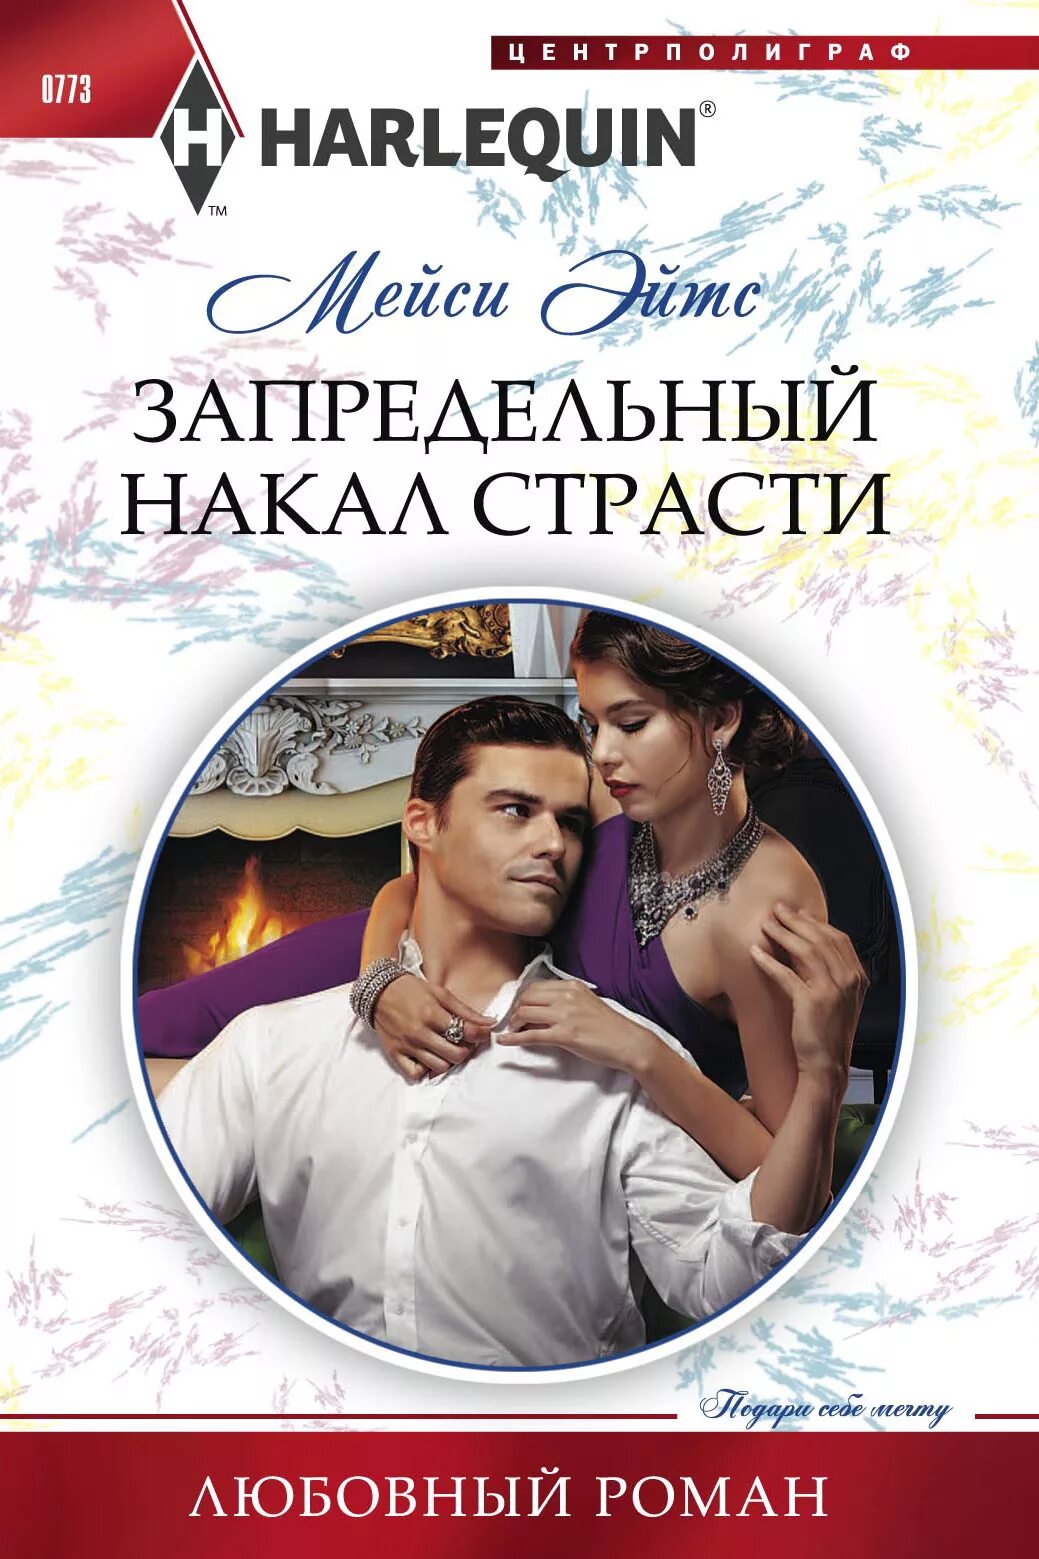 Русские писатели современных любовных романов